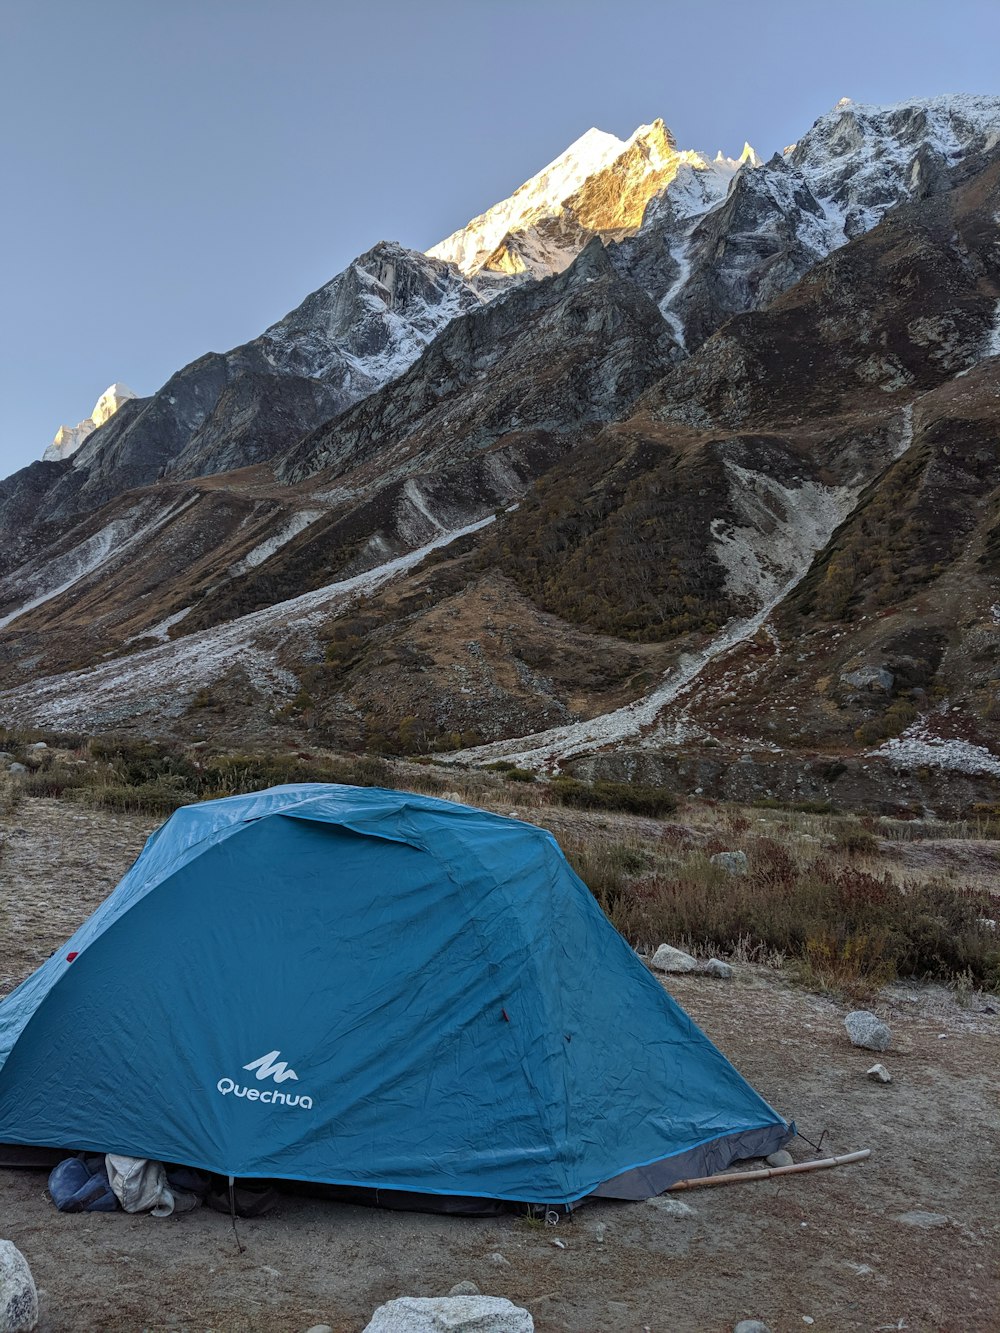 Tente dôme bleu près de la montagne enneigée